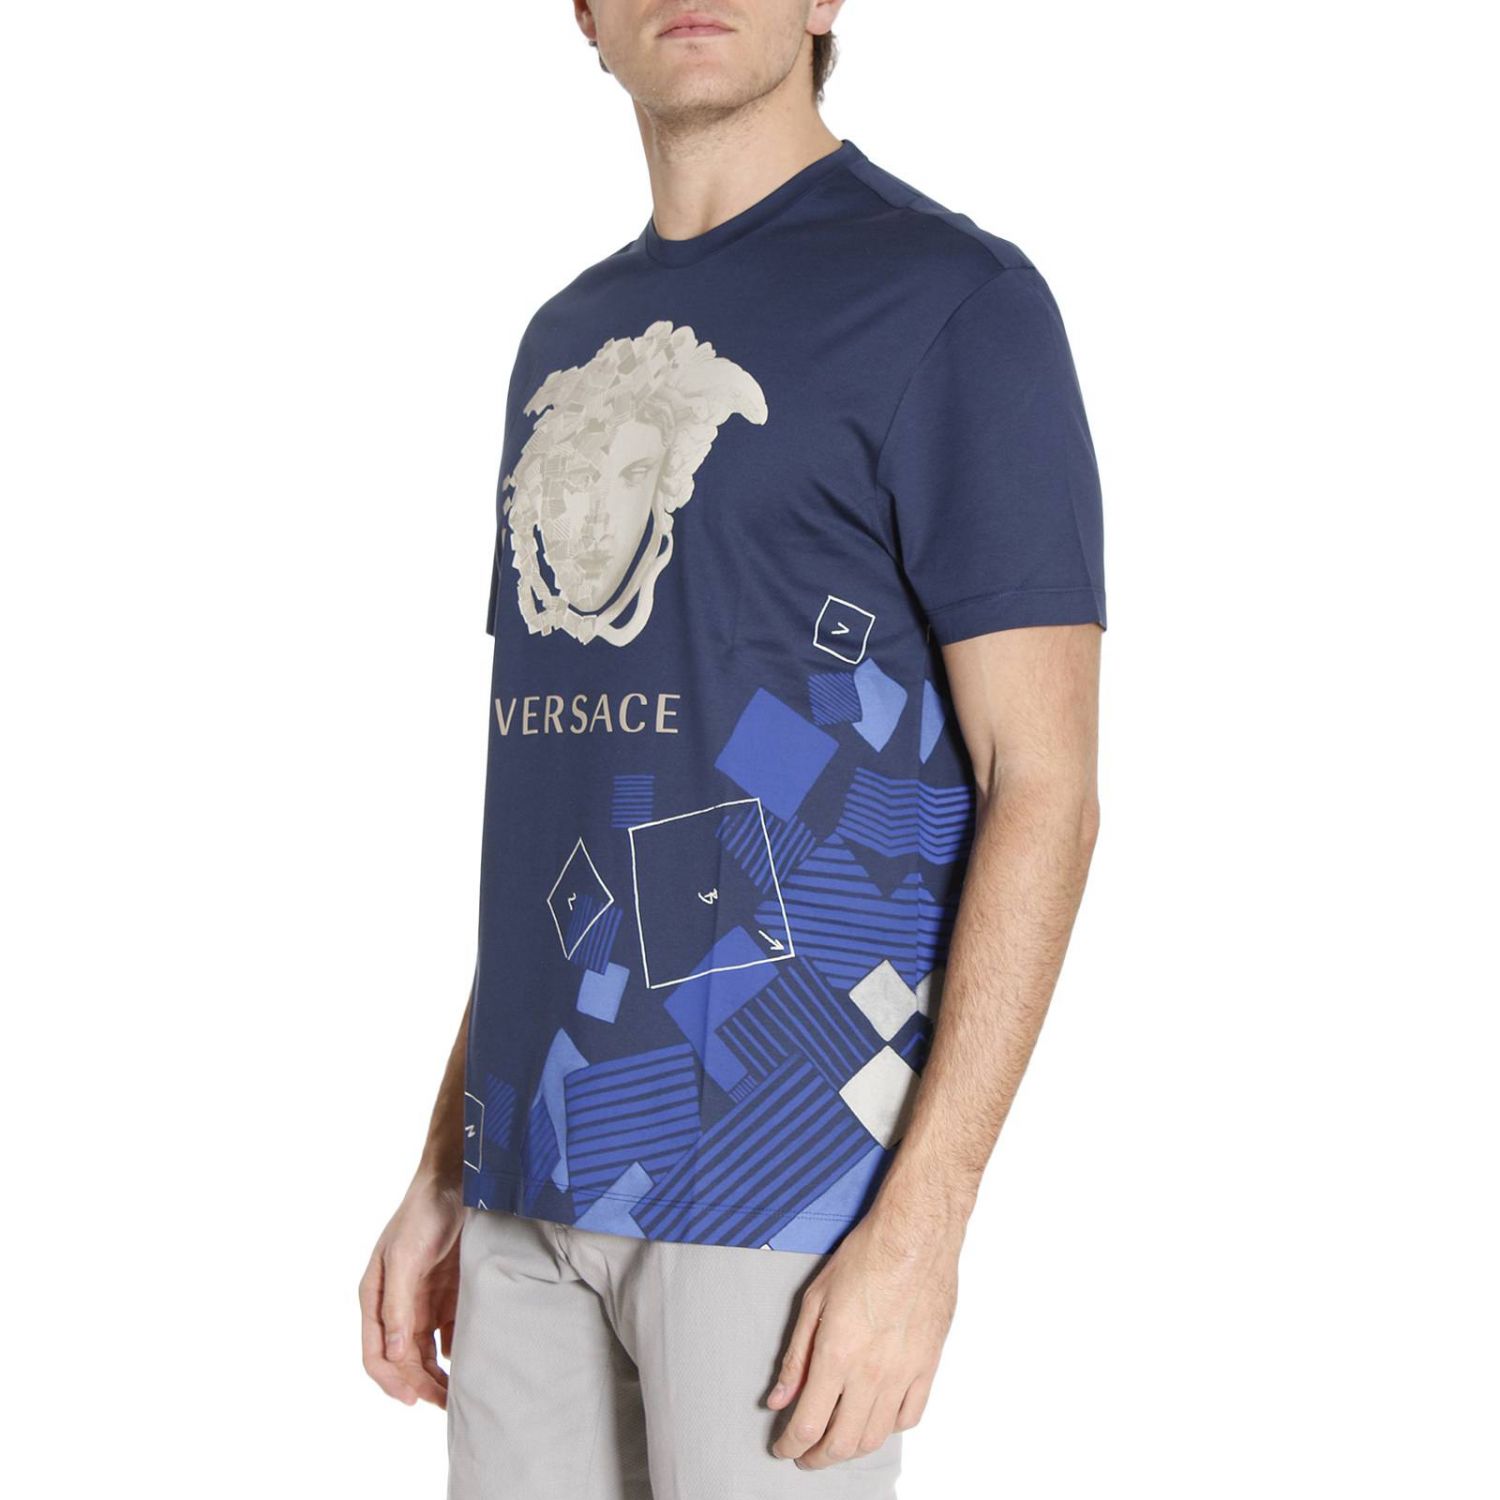 T-shirt men Versace | T-Shirt Versace Men Blue | T-Shirt Versace A75799 A201952 Giglio EN